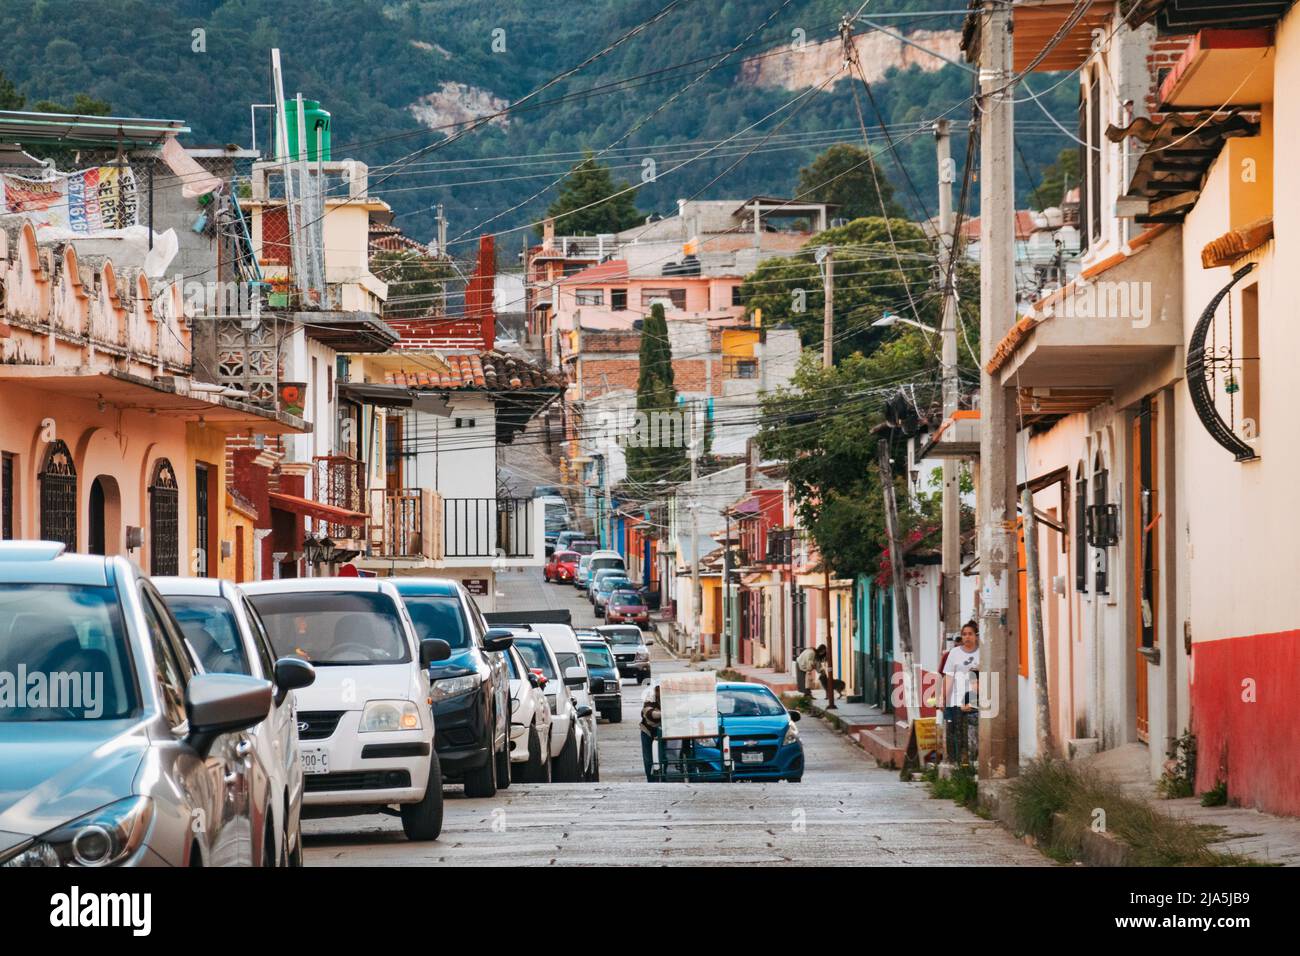 Des rues colorées du centre-ville de San Cristobal de las Casas, une ville coloniale espagnole dans les montagnes de Chiapas, au Mexique Banque D'Images